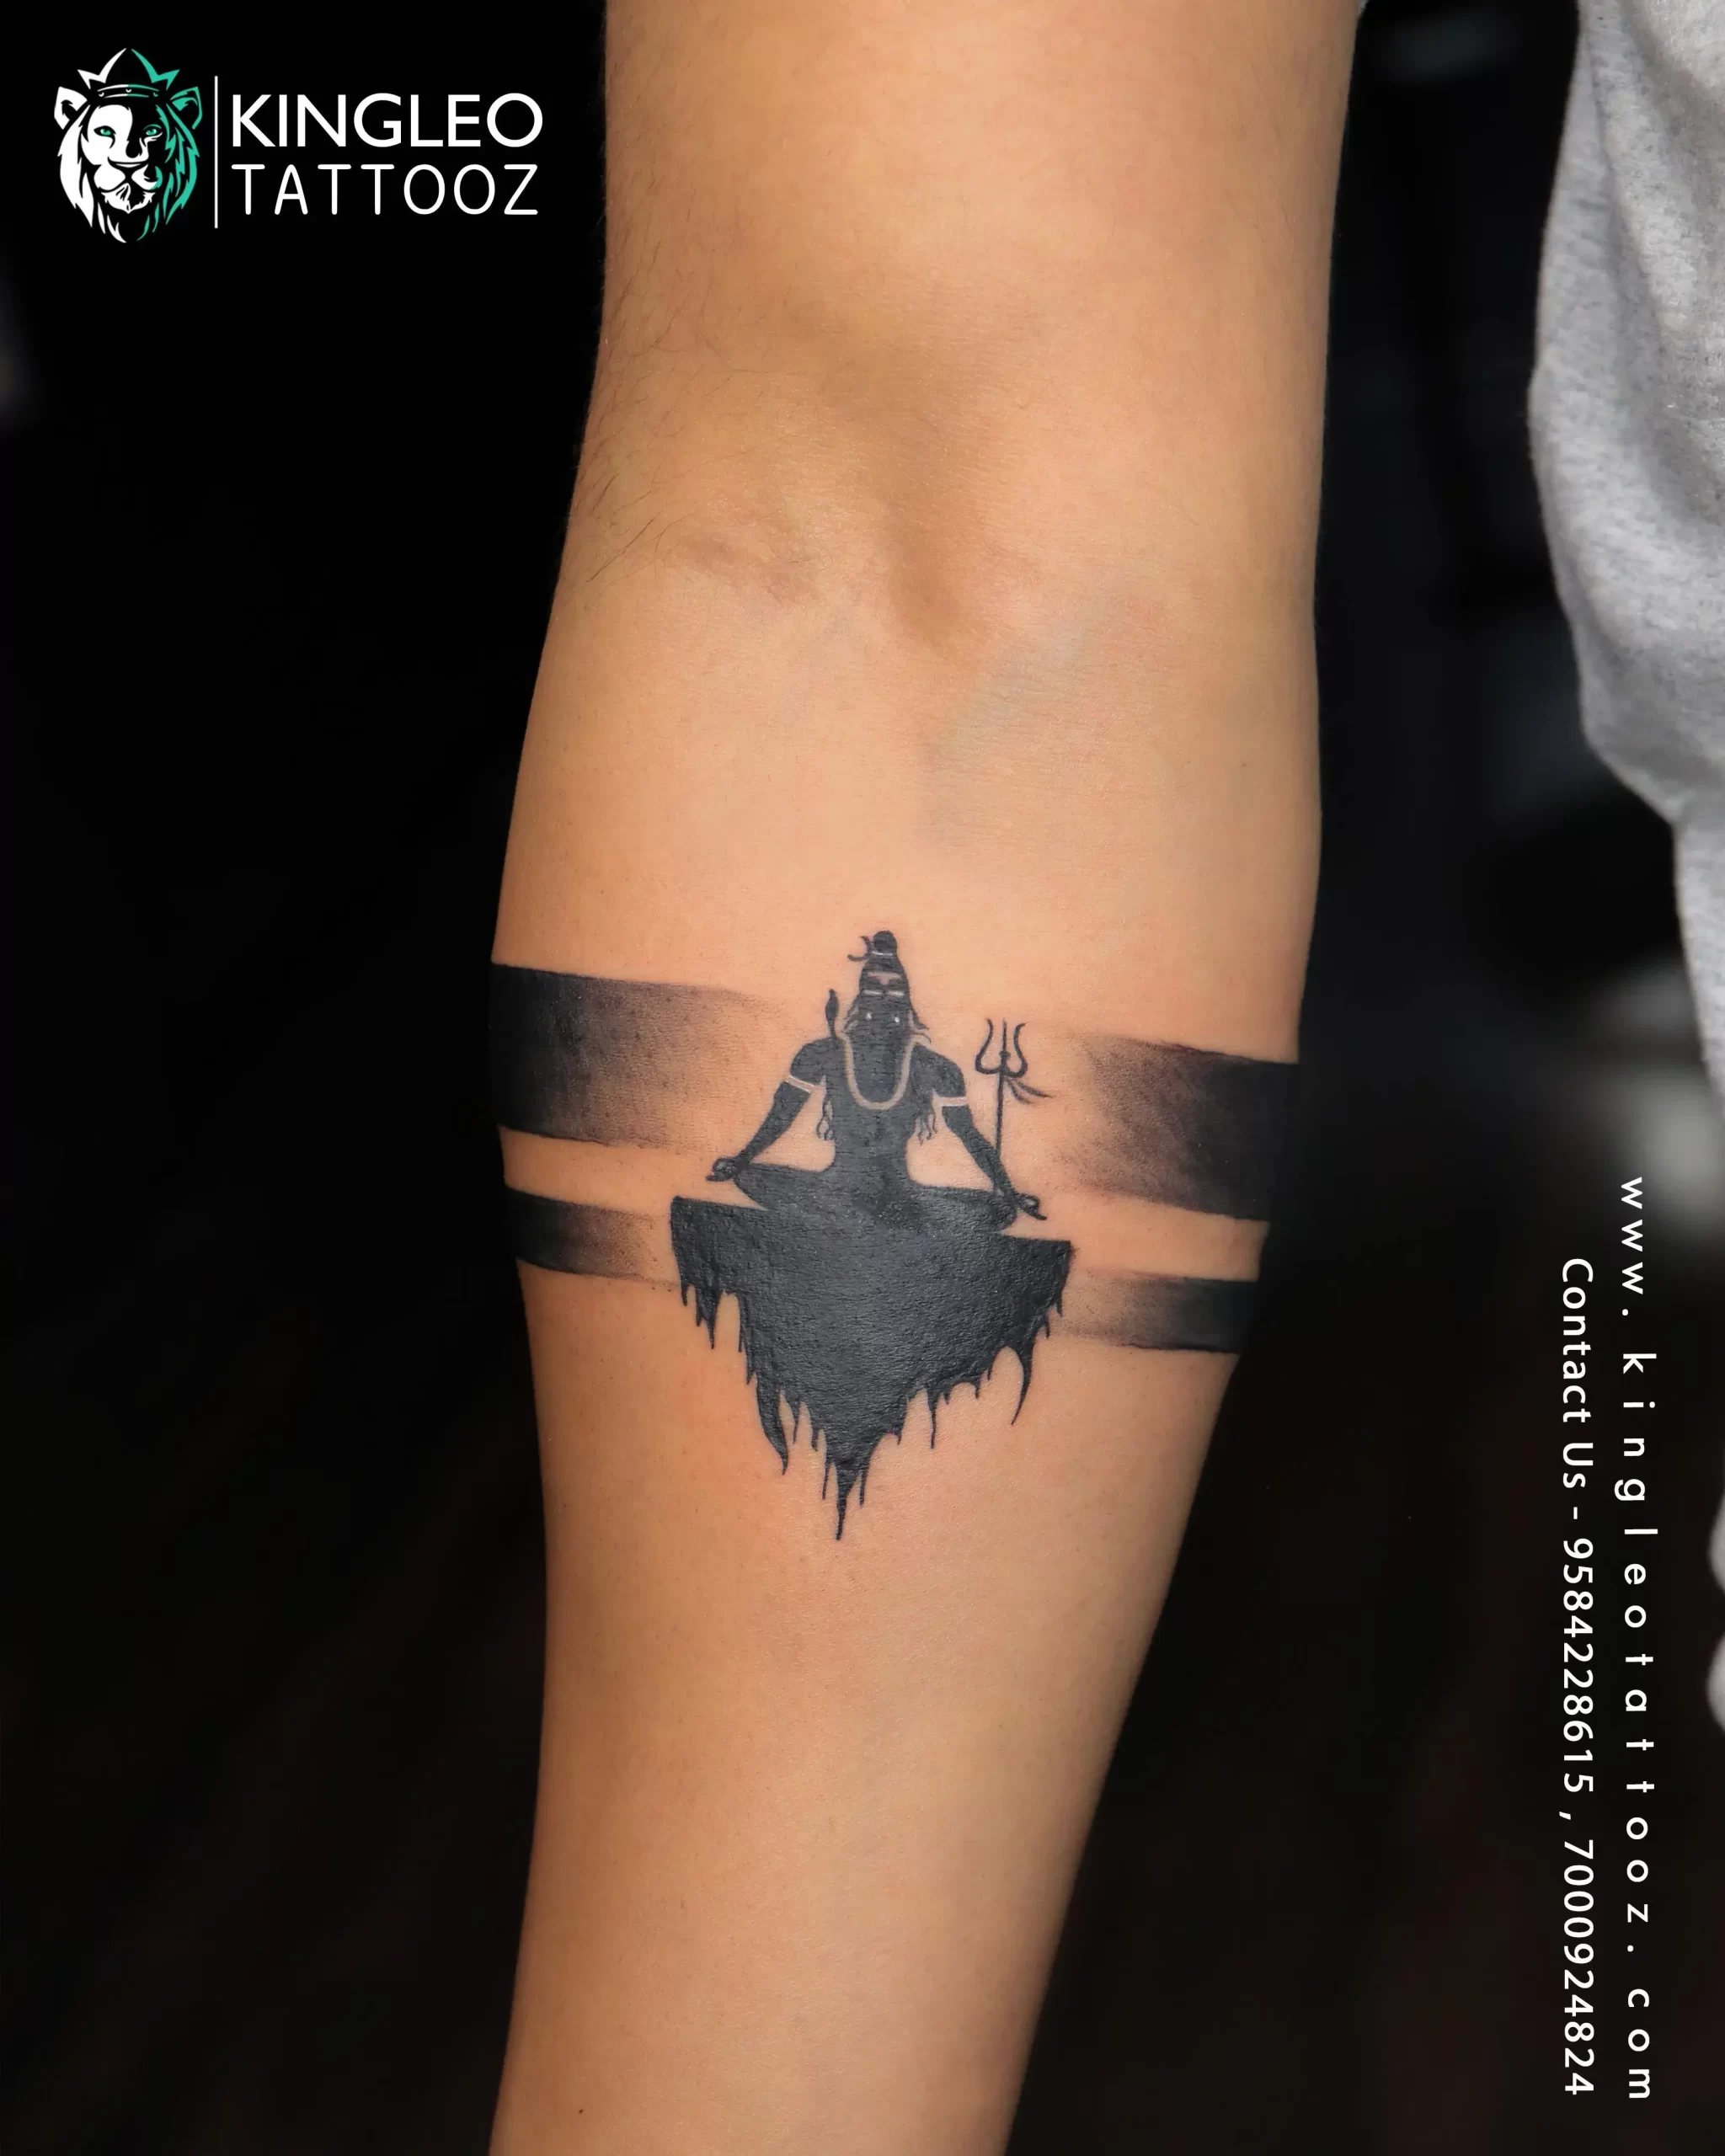 Shiva Tattoo Design : सावन में भोलेनाथ का टैटू करवाने का सोच रहे हैं, ये है  टॉप 10 लेटेस्‍ट डिजाइन की ल‍िस्‍ट | Sawan 2023: Top 10 Best Lord Shiva  tattoo Design